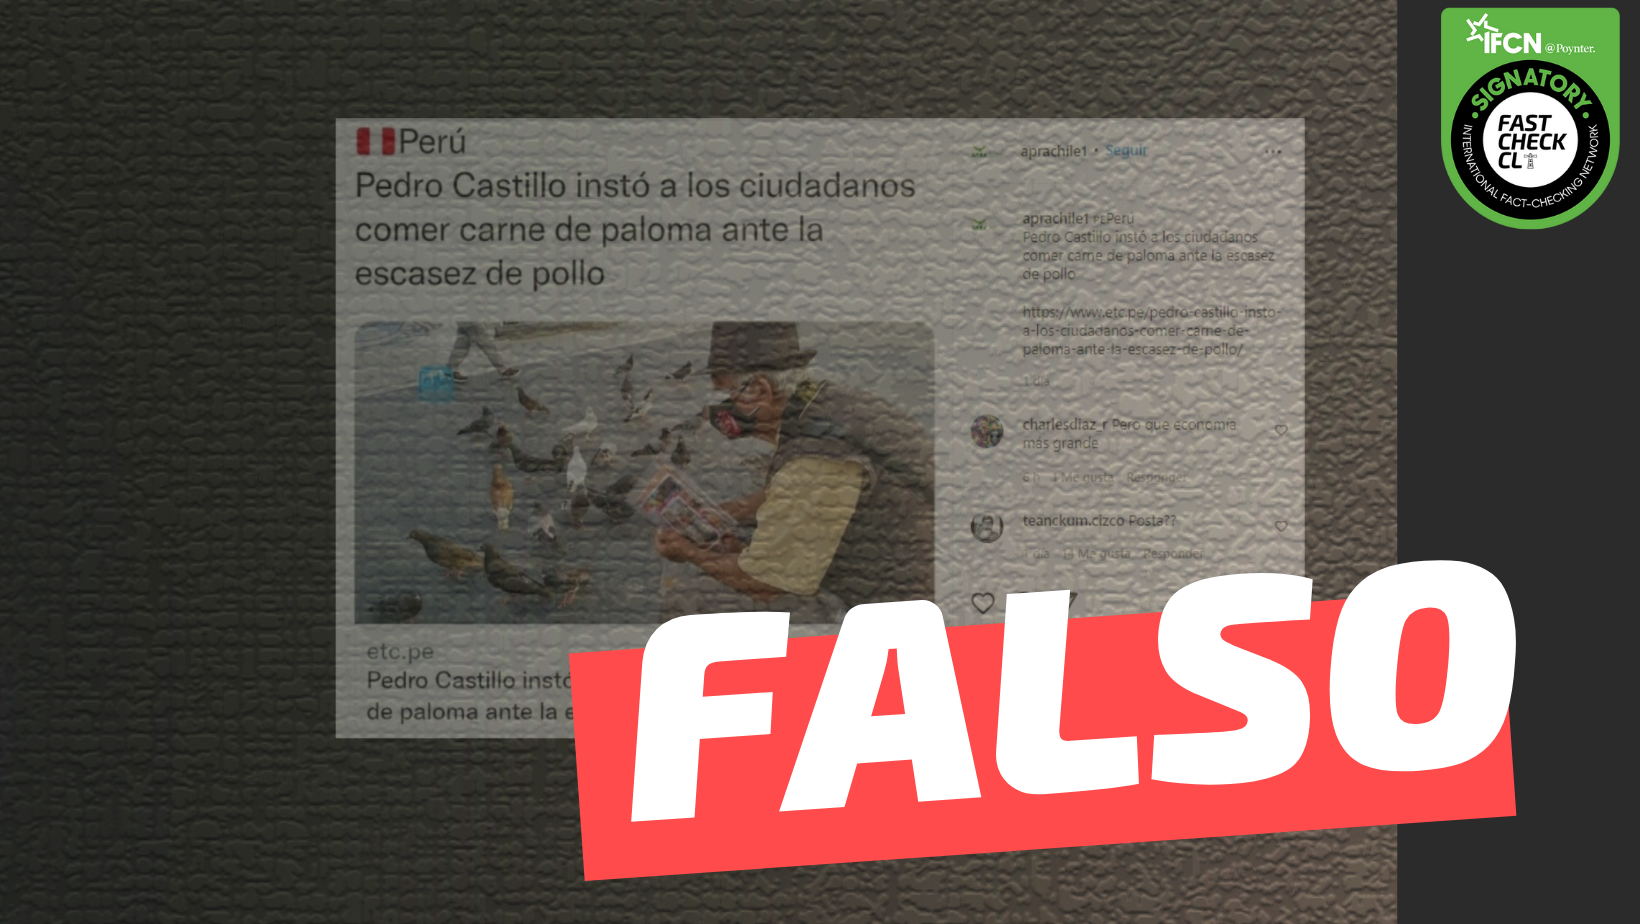 You are currently viewing “Pedro Castillo instó a los ciudadanos comer carne de paloma ante la escasez de pollo”: #Falso